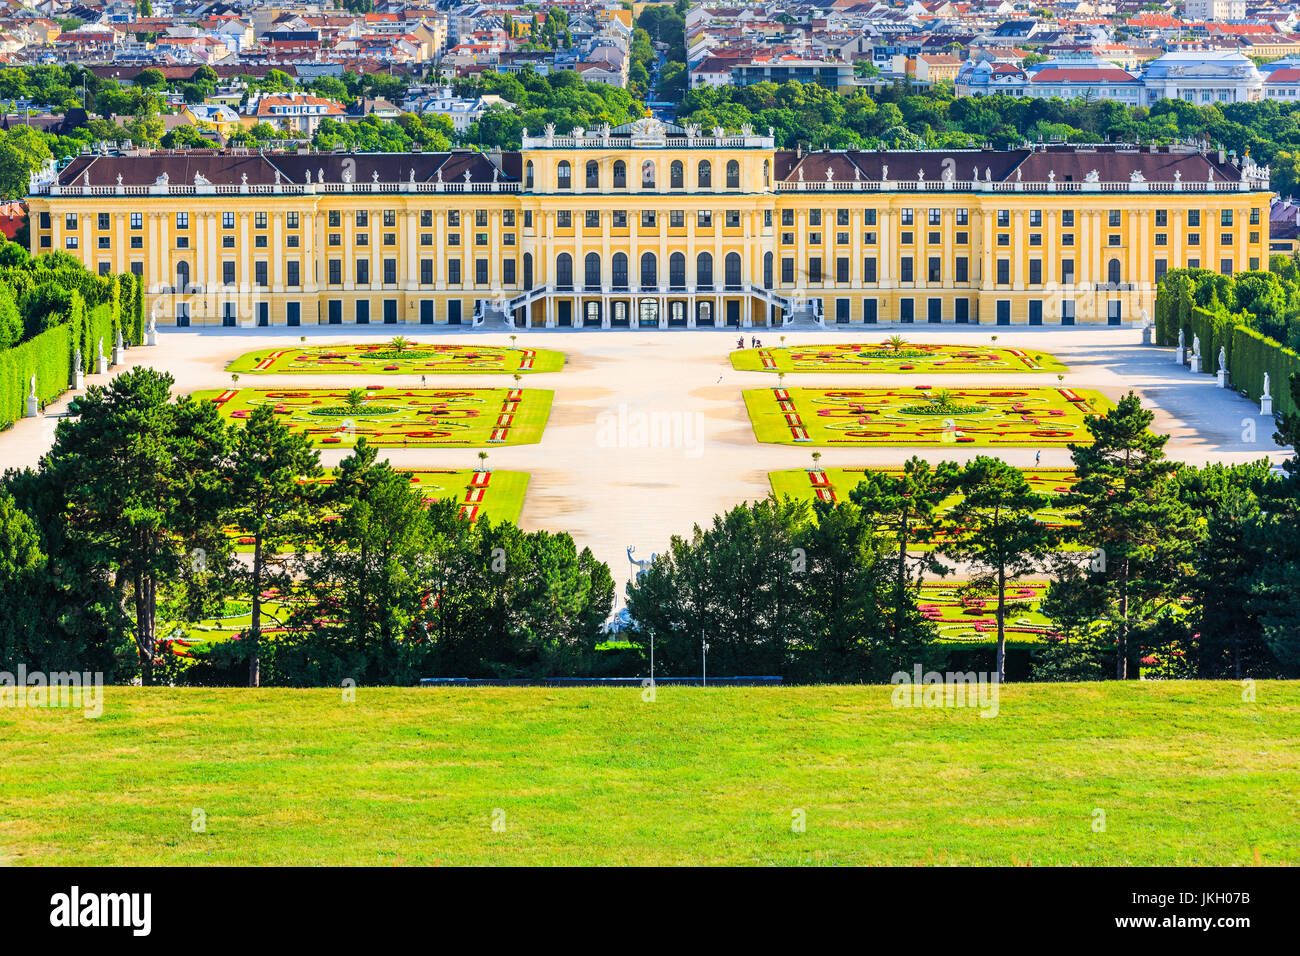 Wien, Österreich - 28. Juni 2017: Schloss Schönbrunn mit Gärten. Die ehemalige kaiserliche Sommerresidenz ist ein UNESCO-Weltkulturerbe. Stockfoto